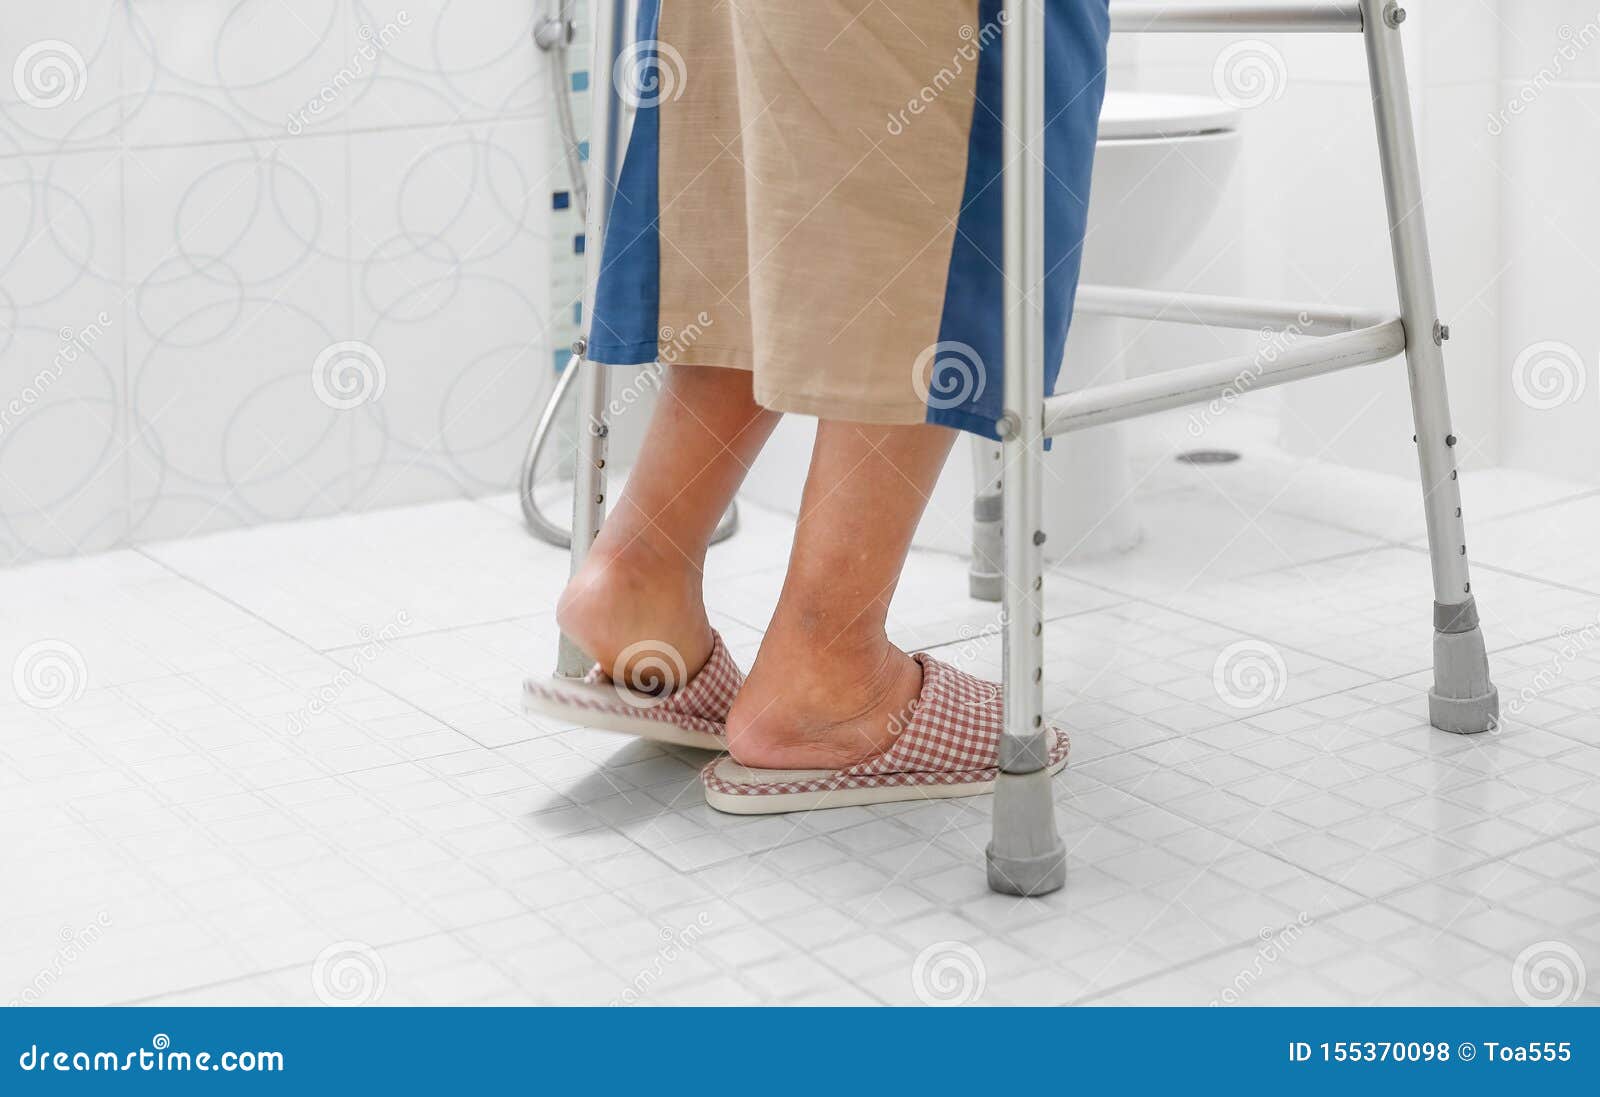 elderly swollen feet or edema leg walk into bathroom